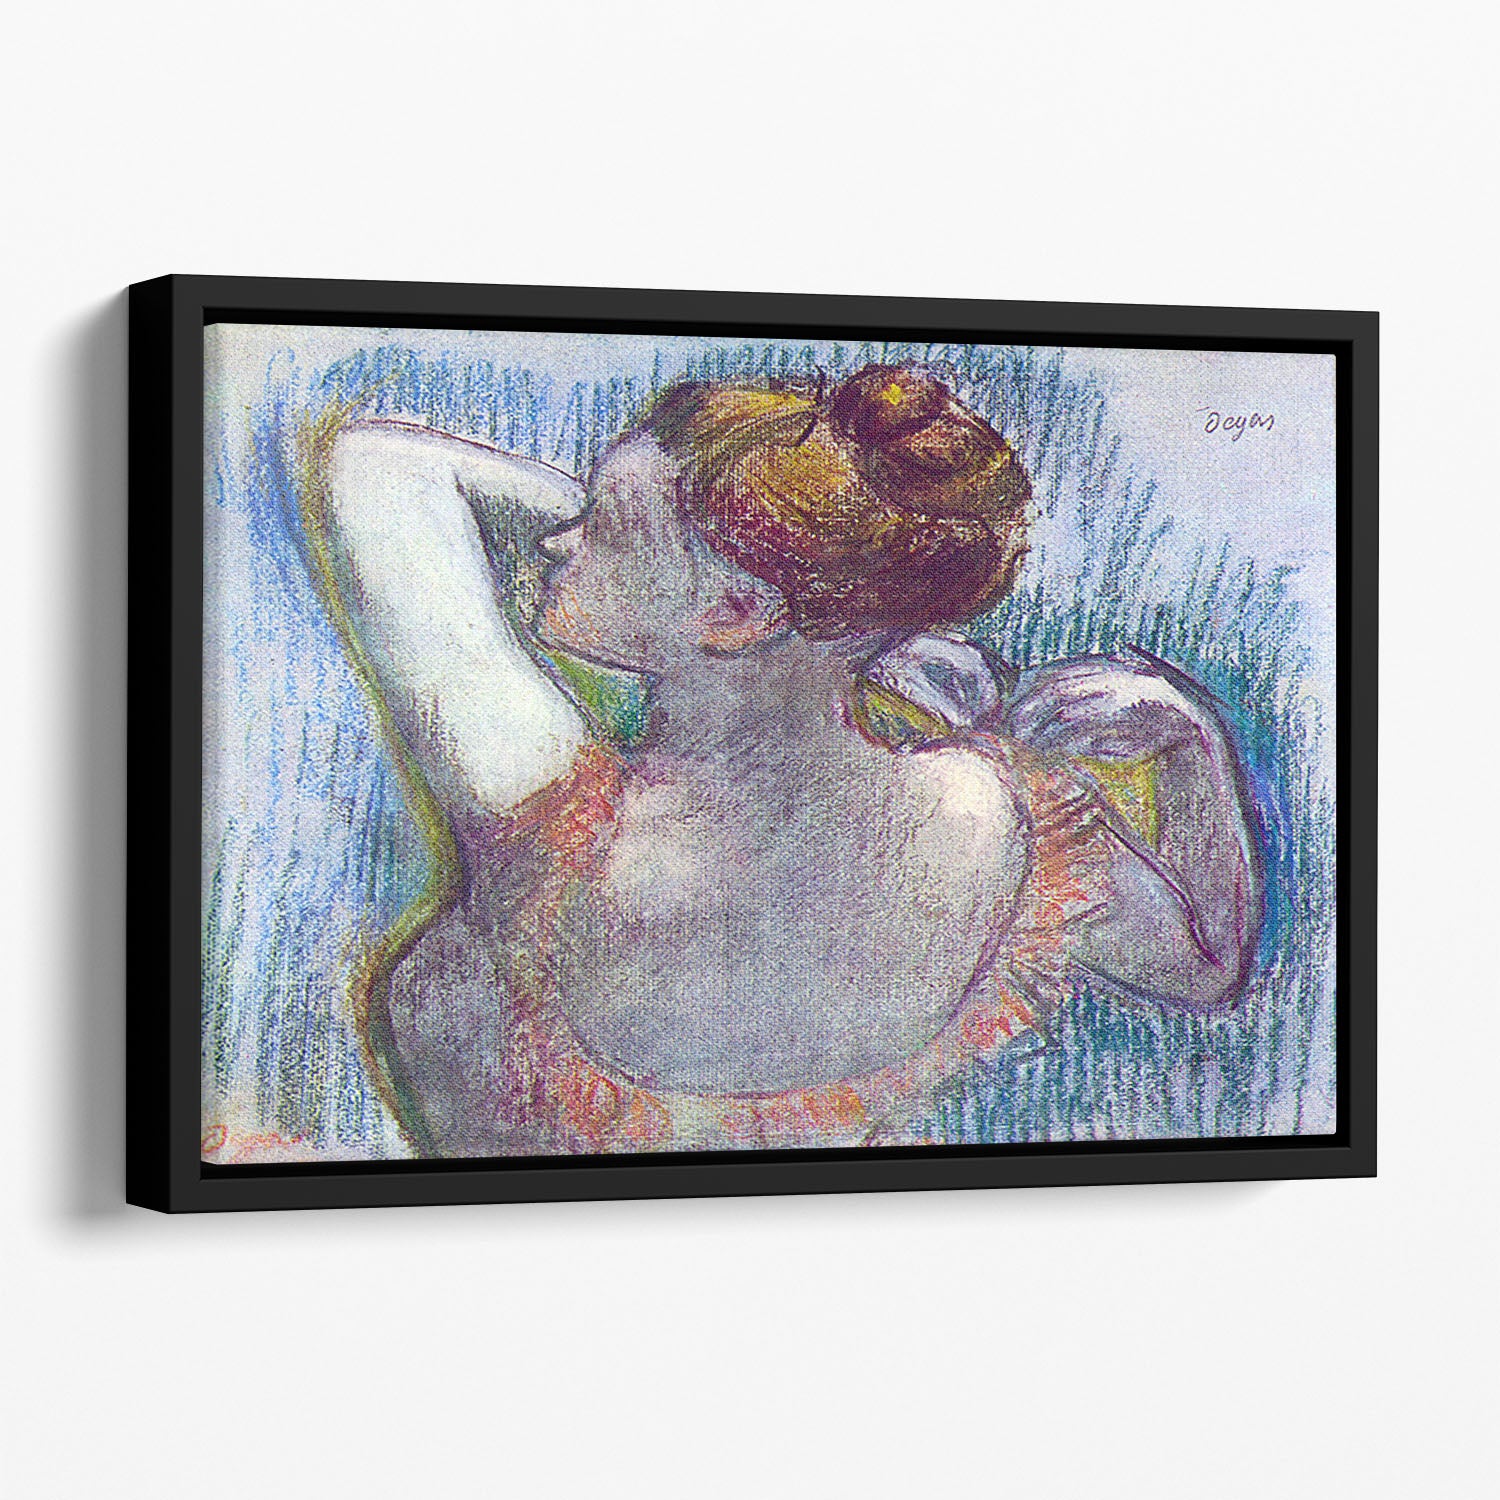 Dancer by Degas Floating Framed Canvas